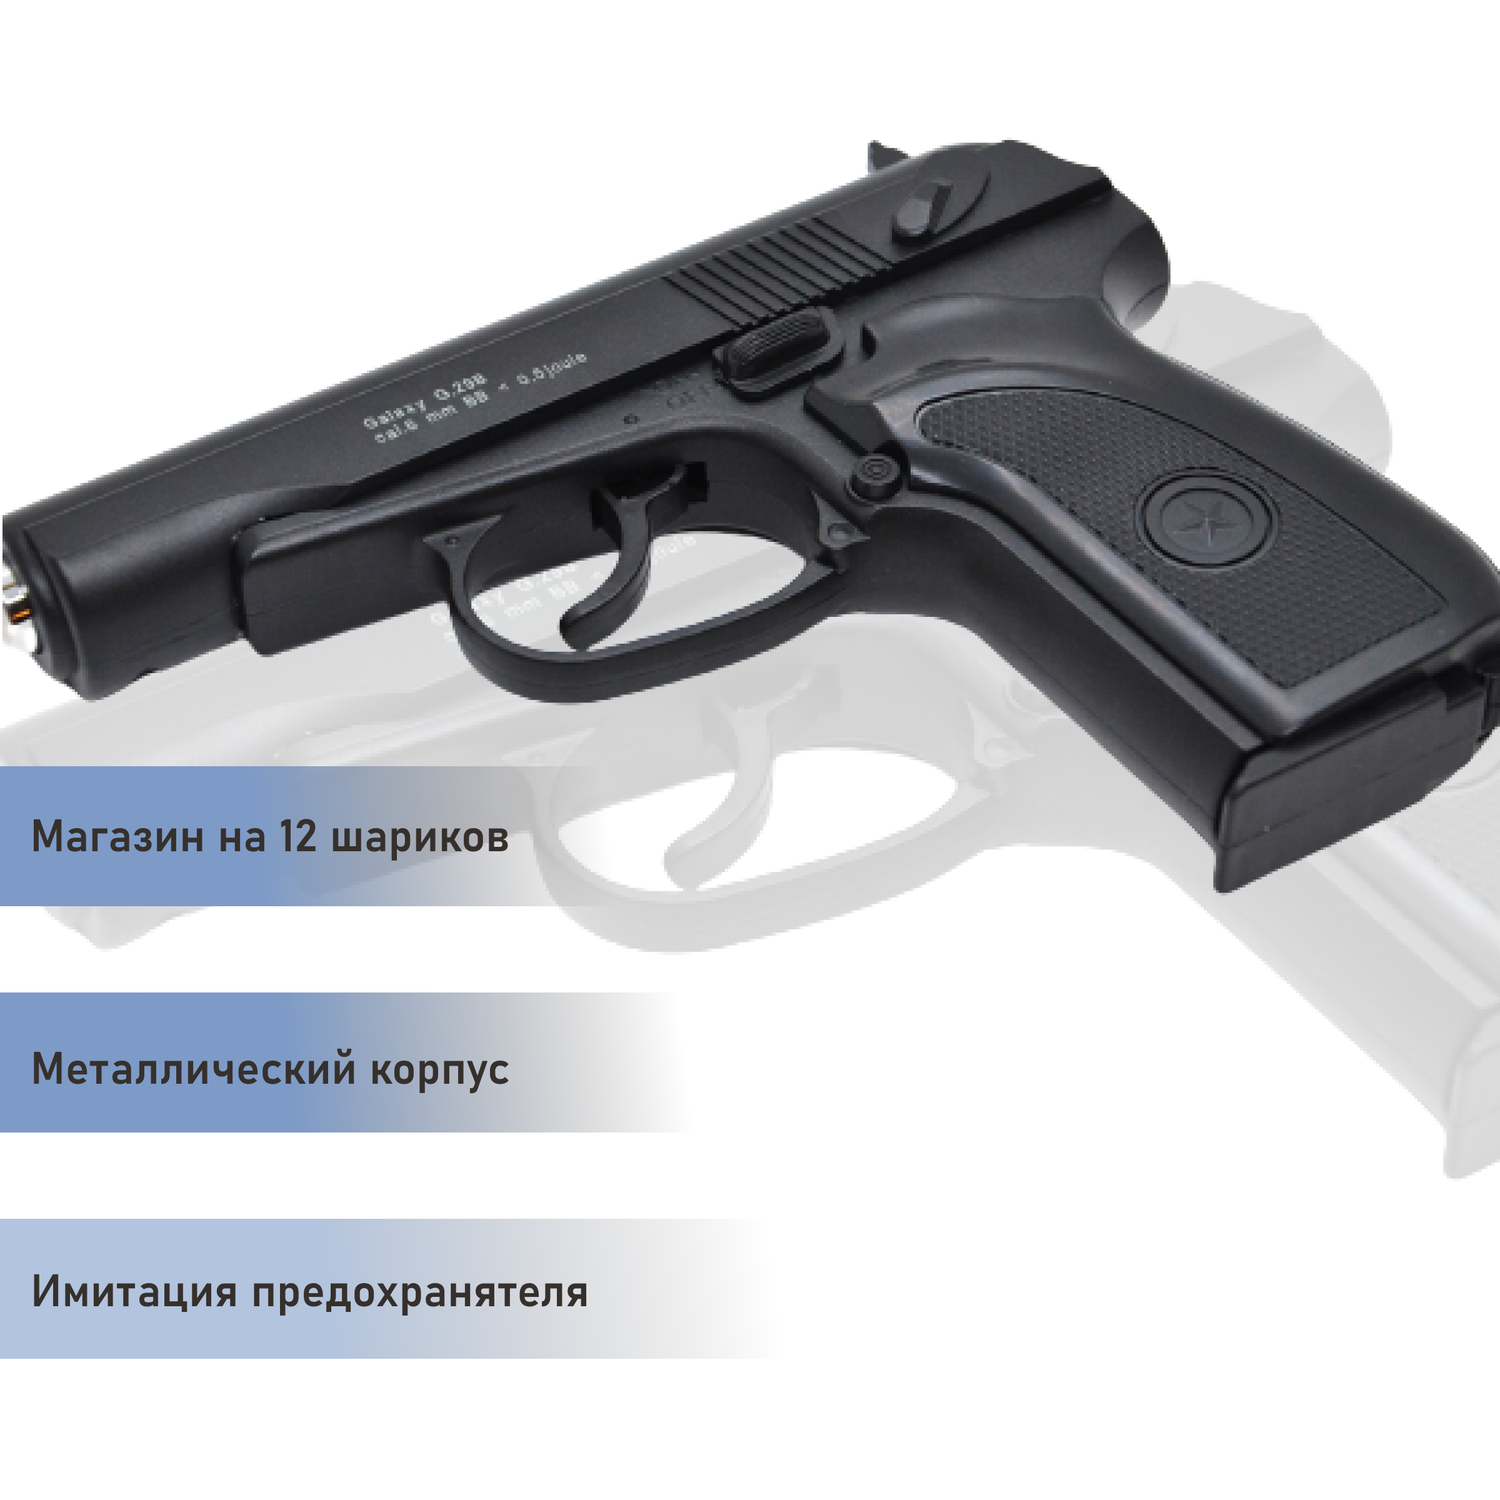 Пневматический пистолет Galaxy Макарова черная рукоятка второй магазин и шарики 1000 шт. - фото 4